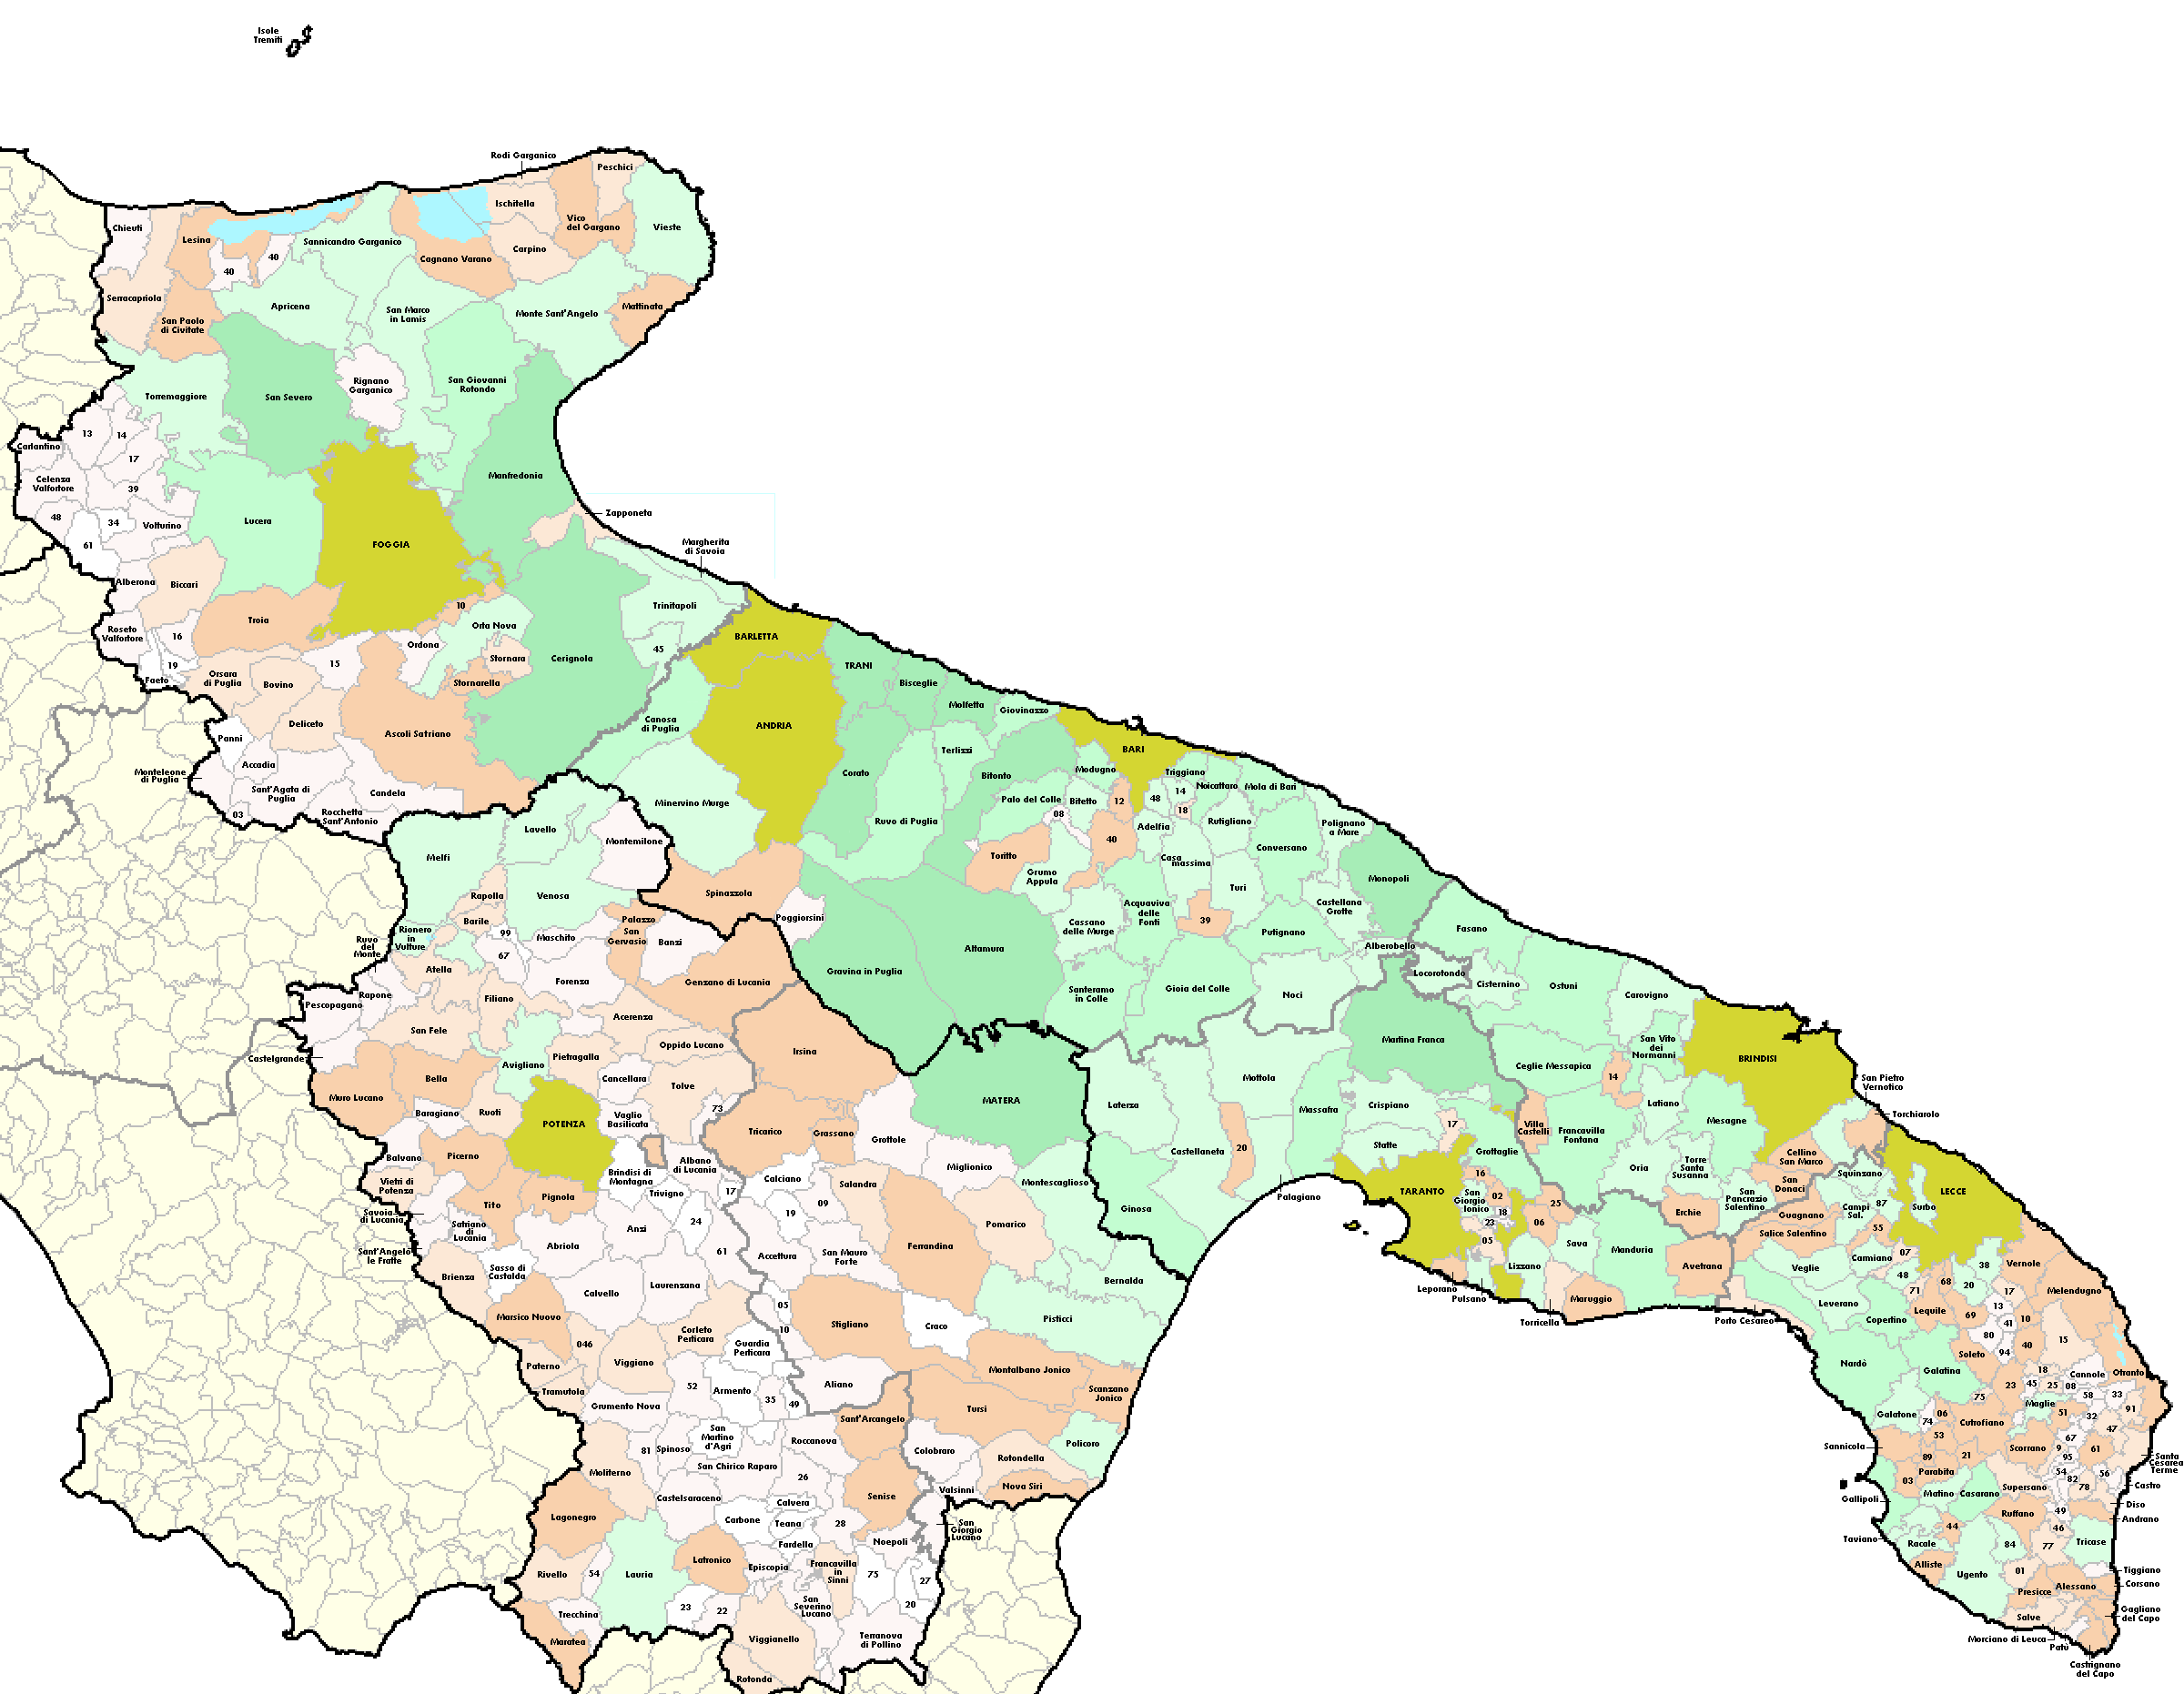 Cartina della Puglia